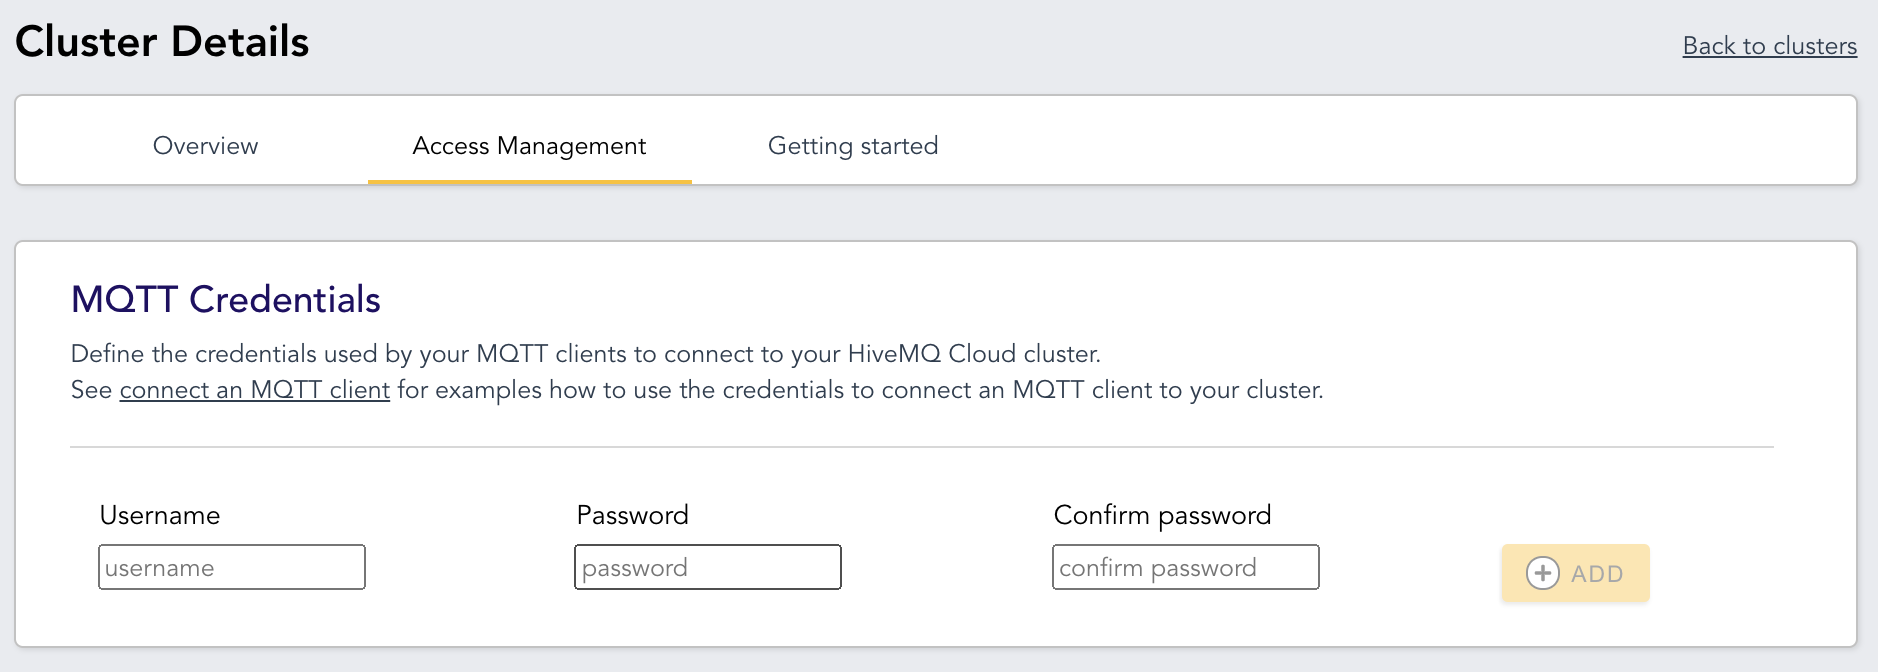 HiveMQ Cloud Access Management